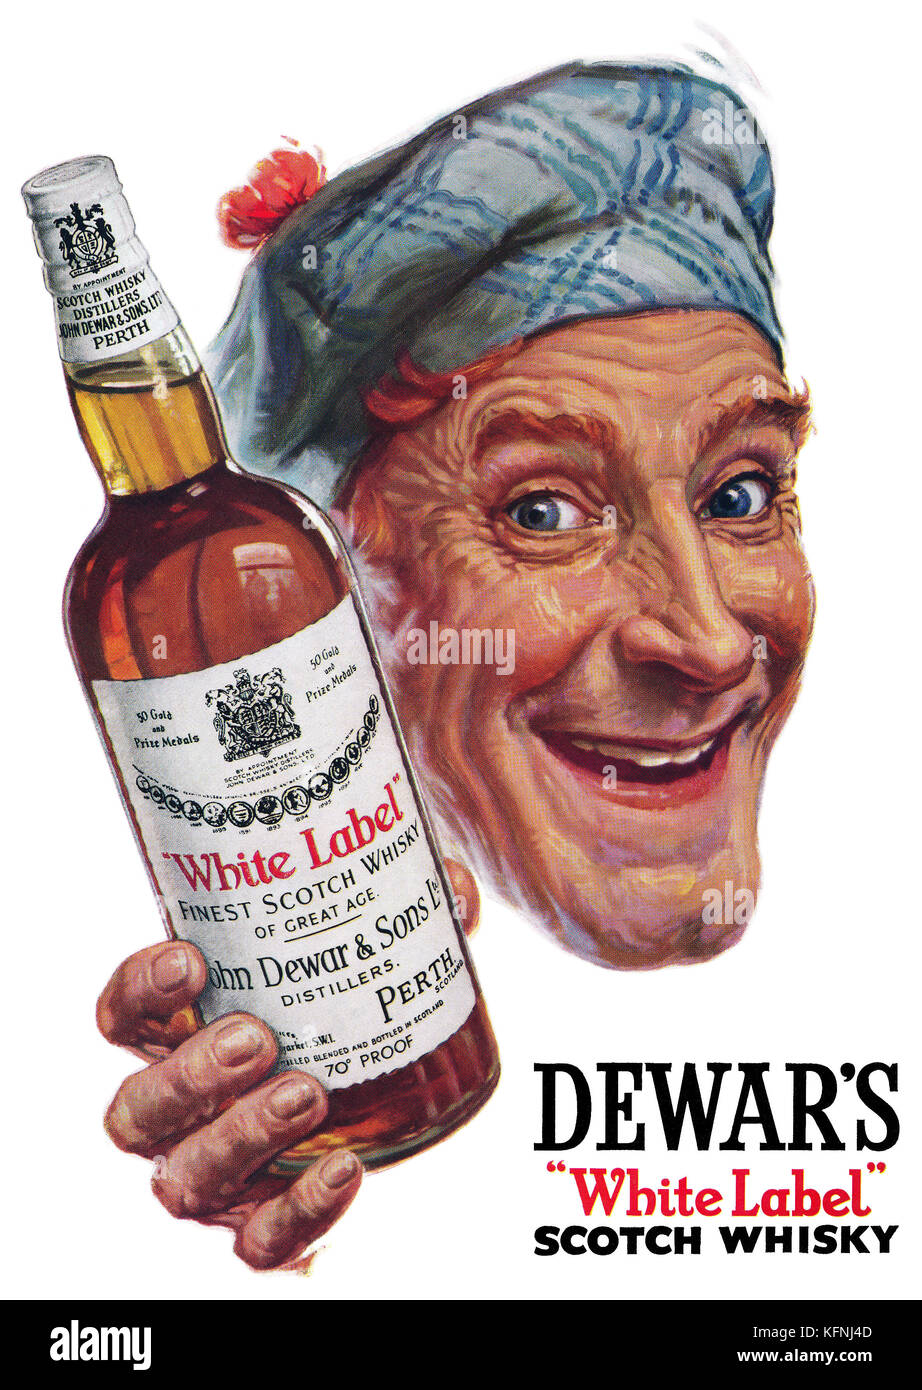 1951 britischen Werbung für dewar's White Label Scotch Whisky. Stockfoto